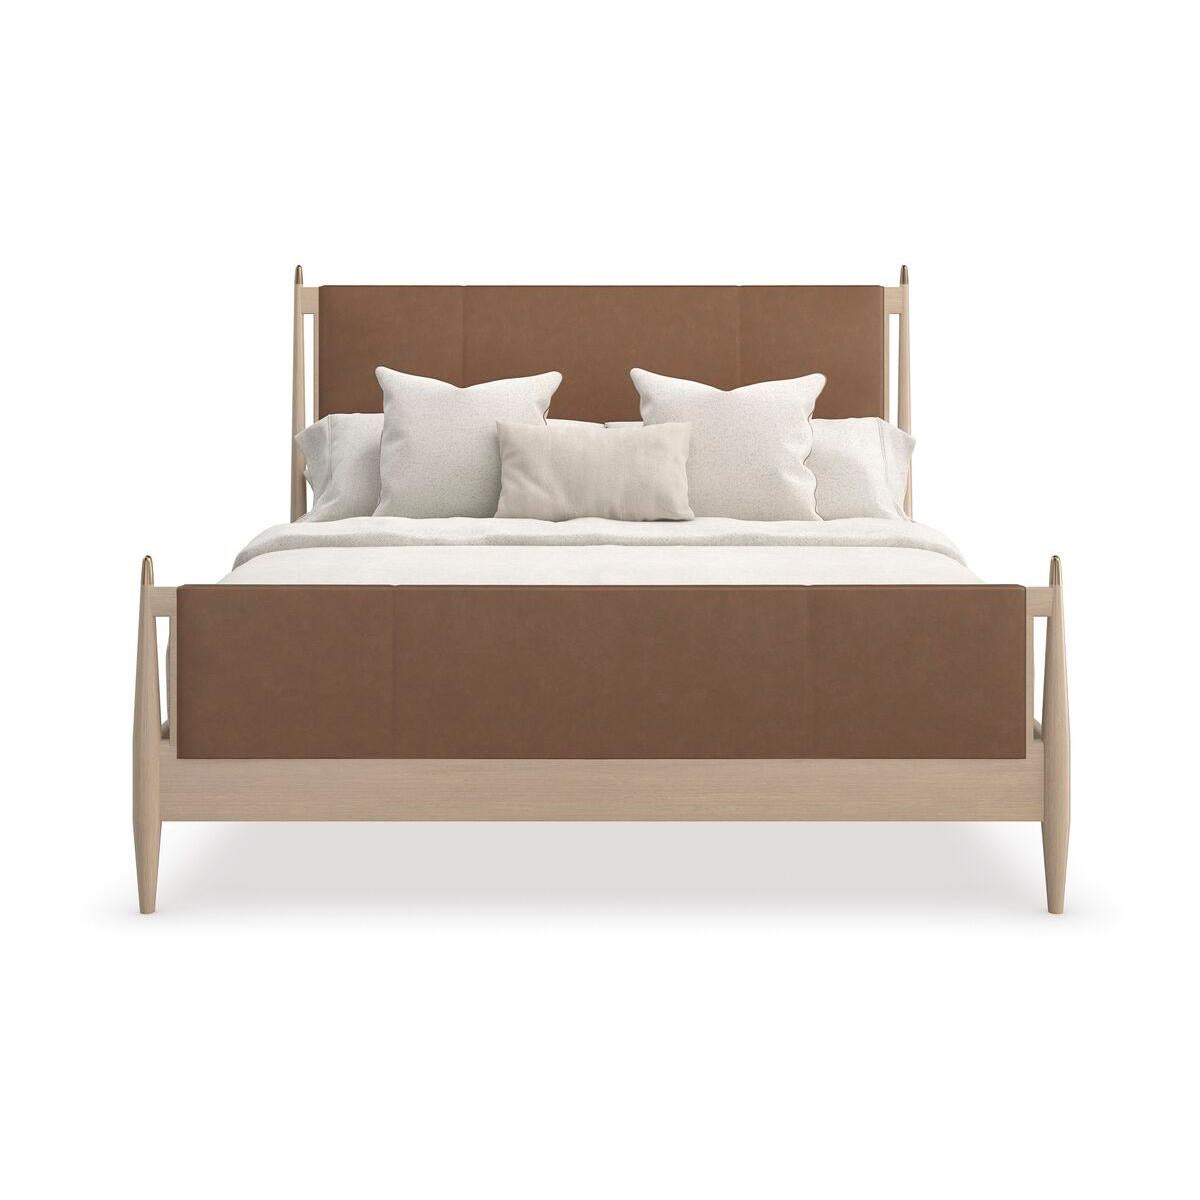 Mit seinen fließenden, modernen Linien und der reichhaltigen Verwendung von MATERIAL bringt das Bett einen schlichten, aber raffinierten Rhythmus in die Schlafzimmereinrichtung. Das schlichte Kopfteil im Parsons-Stil ist mit edlem, kamelfarbenem